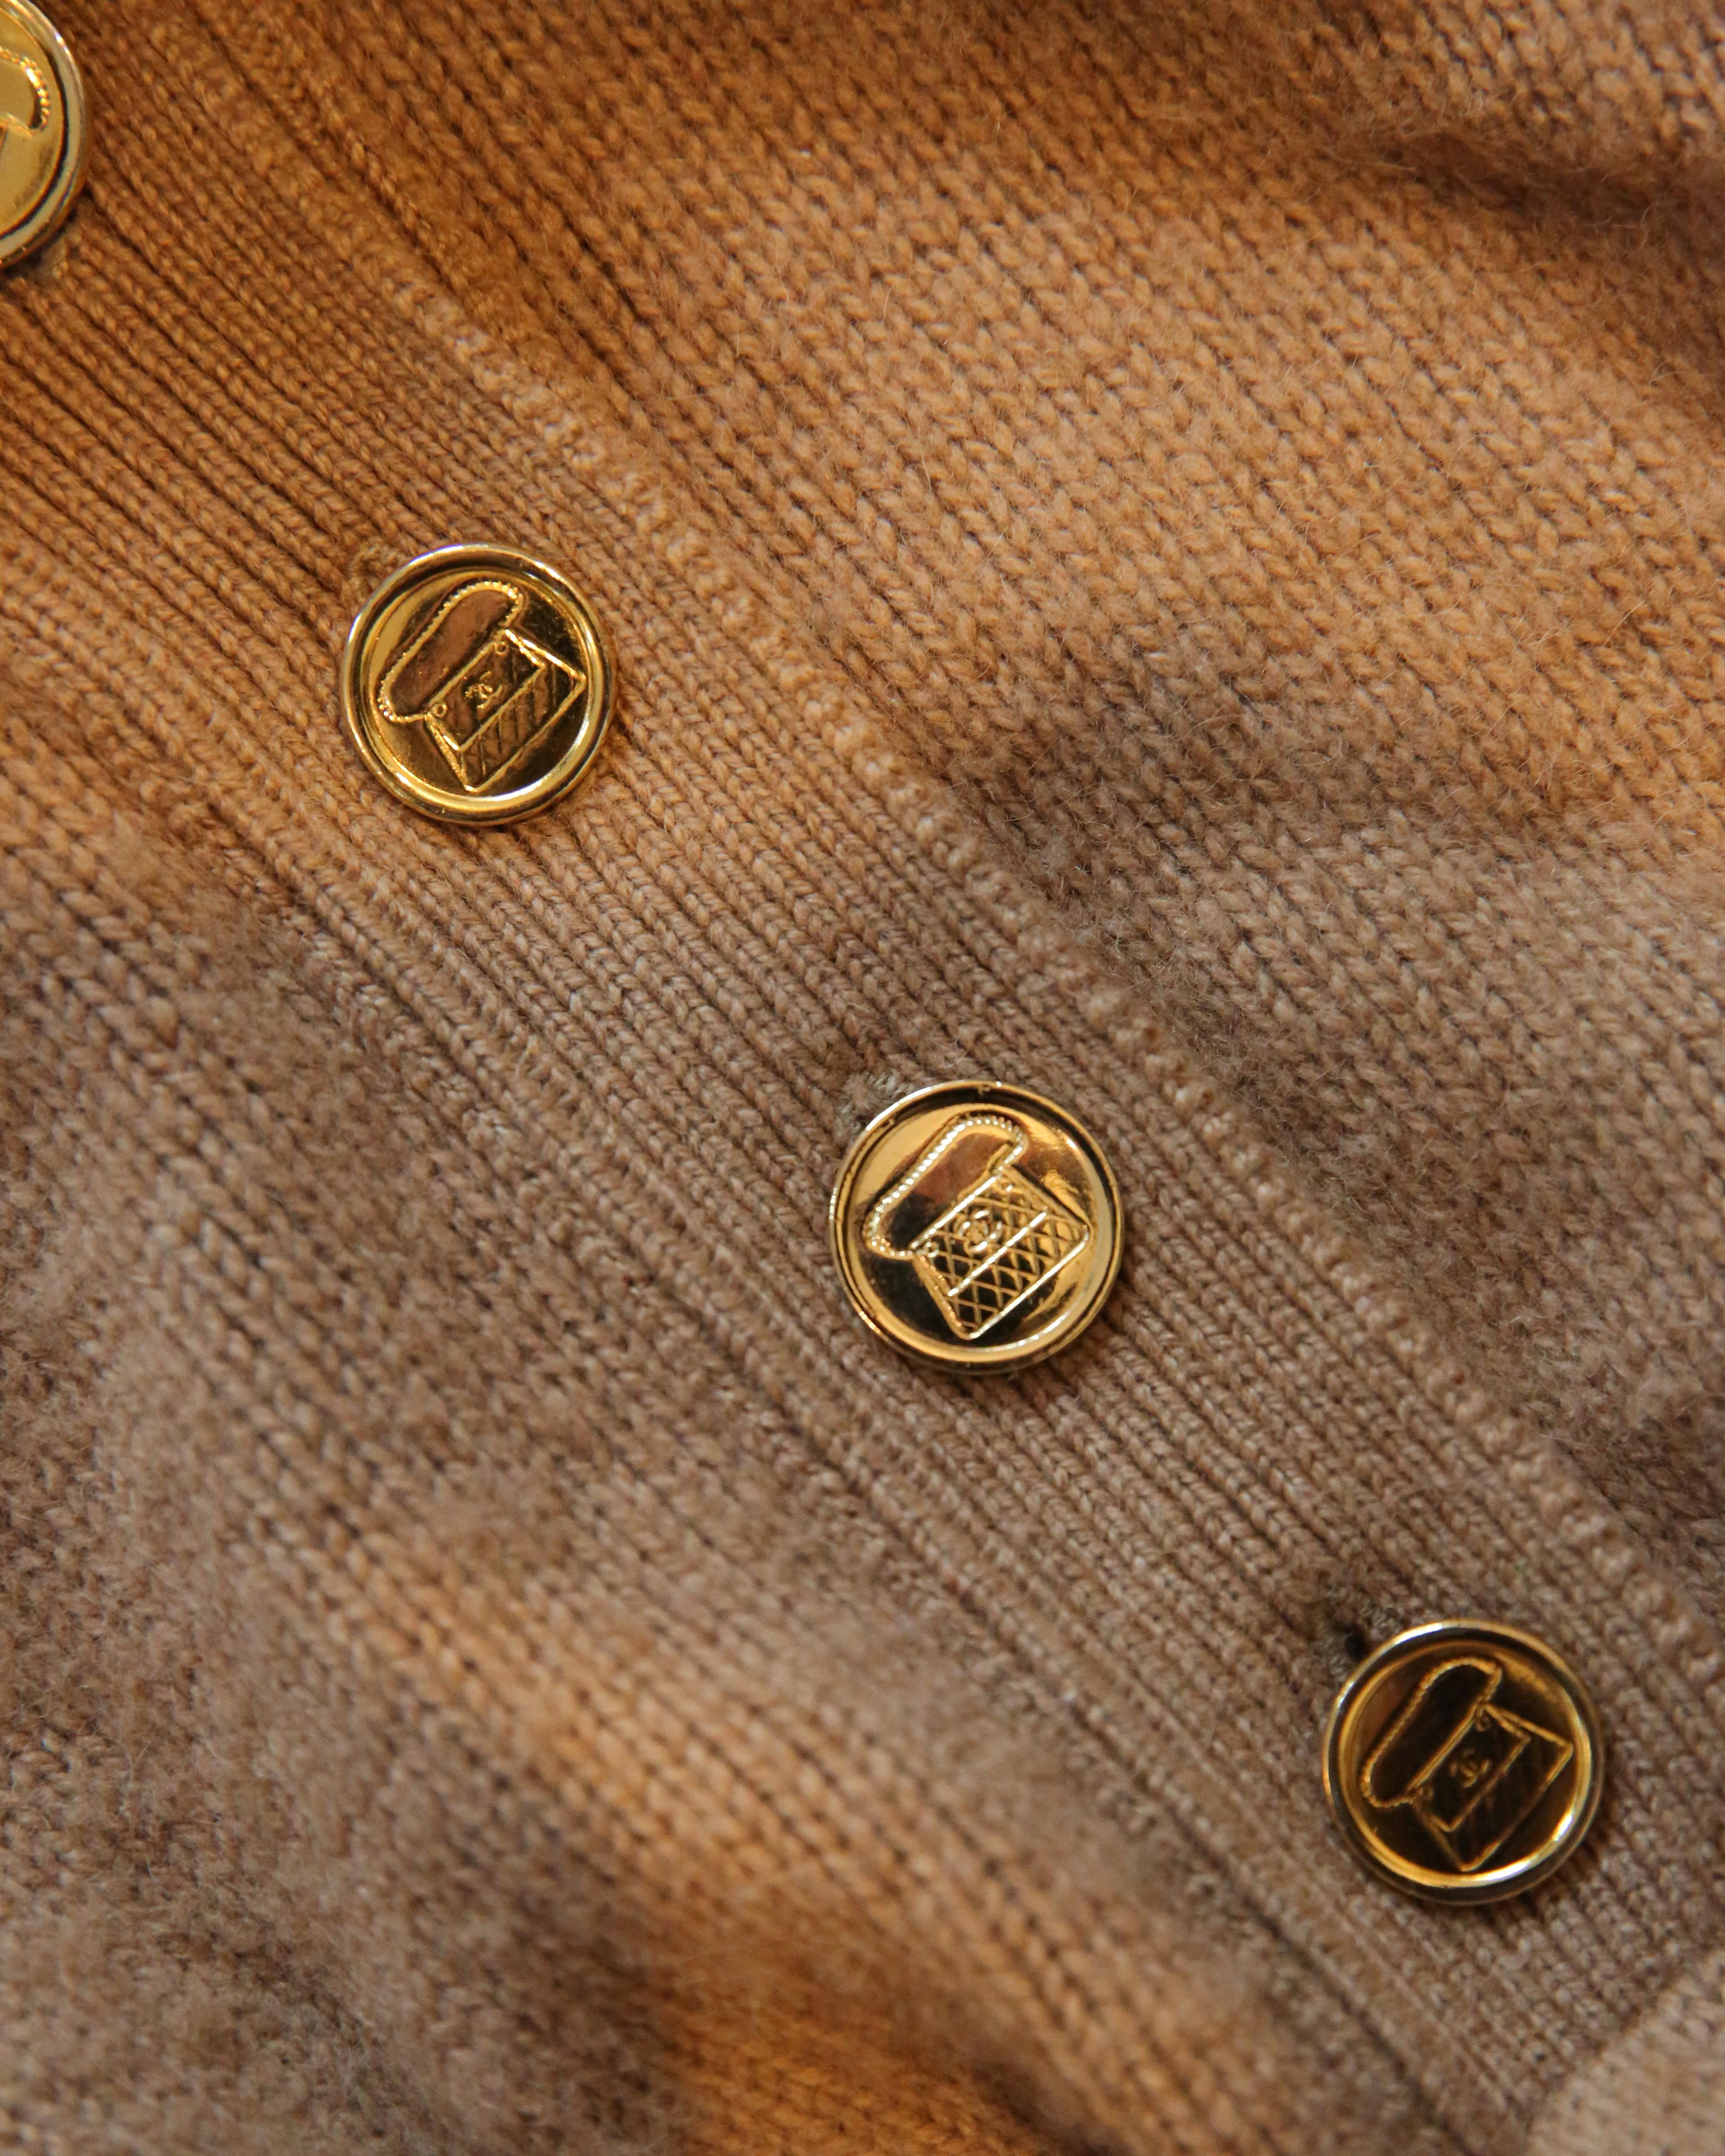 Chanel vtg tan camel beige turtleneck gold logo button cashmere dress sweater  For Sale 10